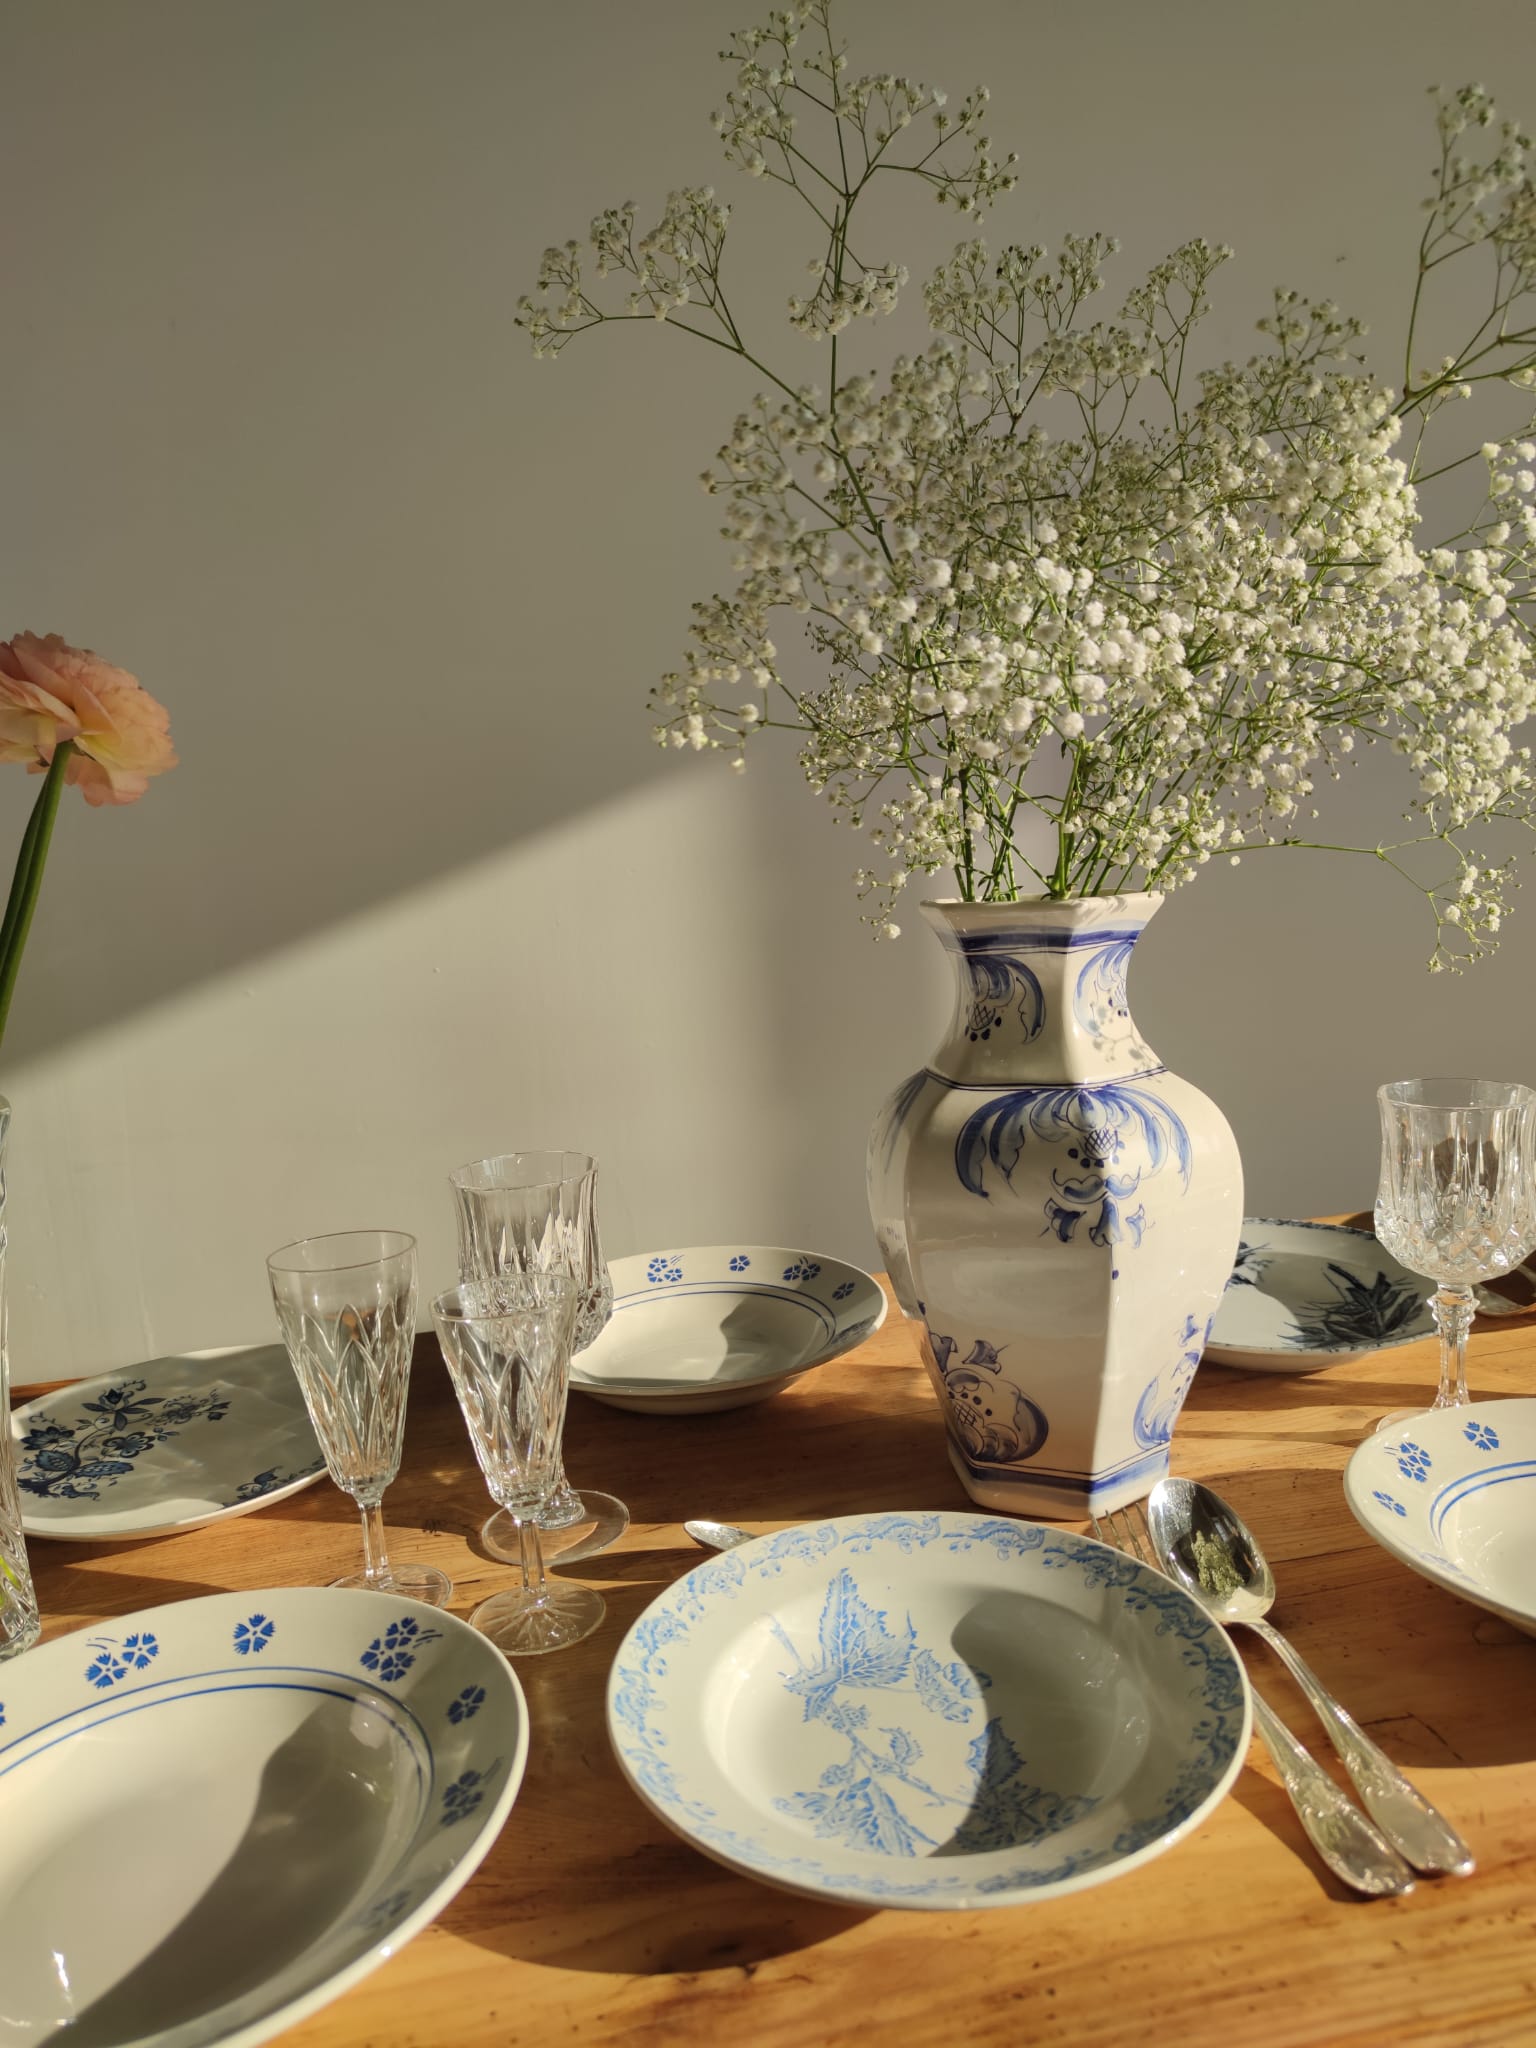 Lot de 8 assiettes creuses Lunéville modèle Danièle à décor floral bleu